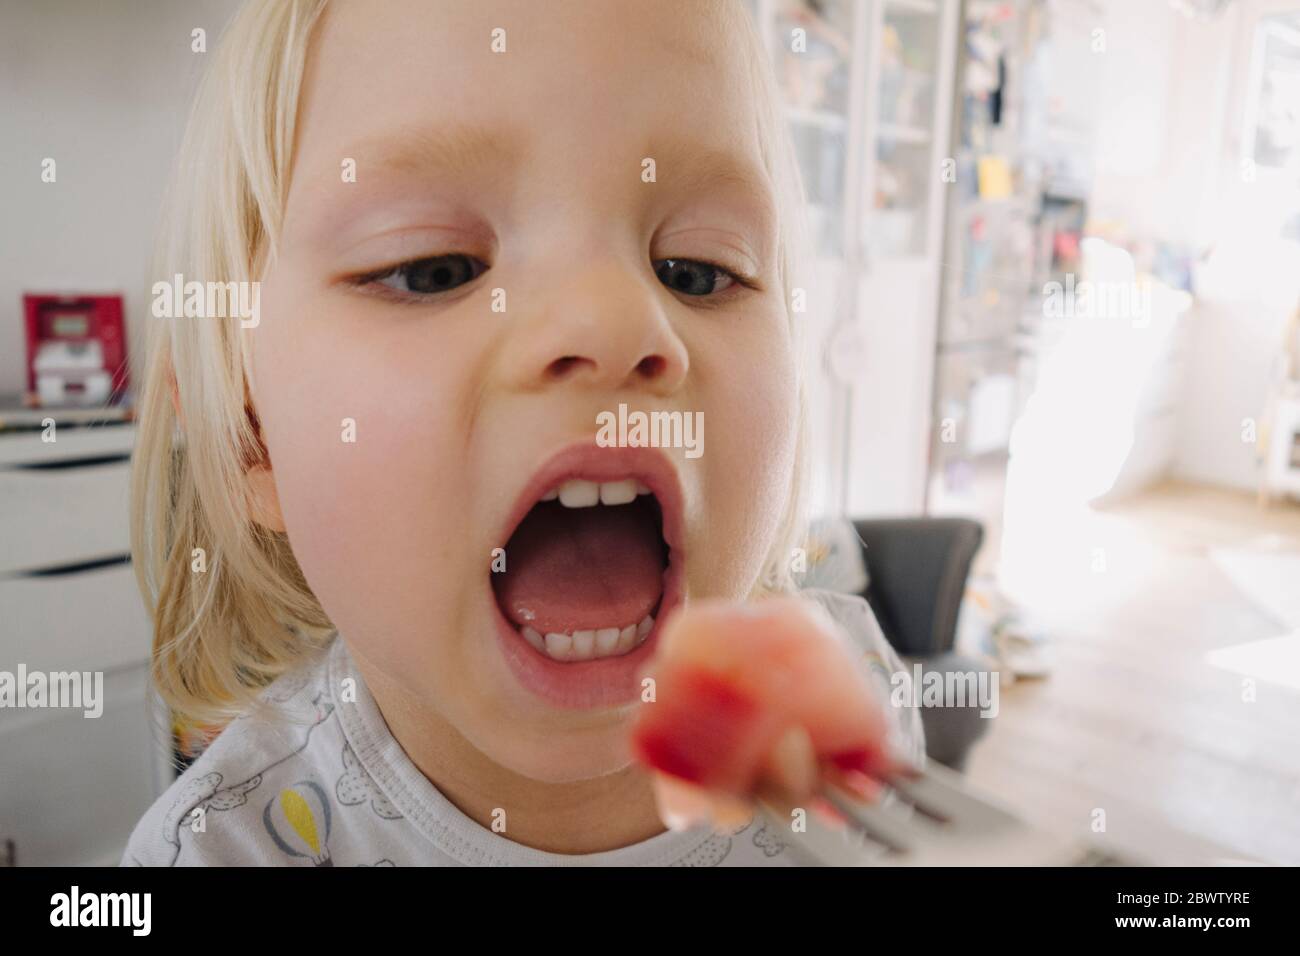 Retrato de una niña rubia con boca abierta Foto de stock